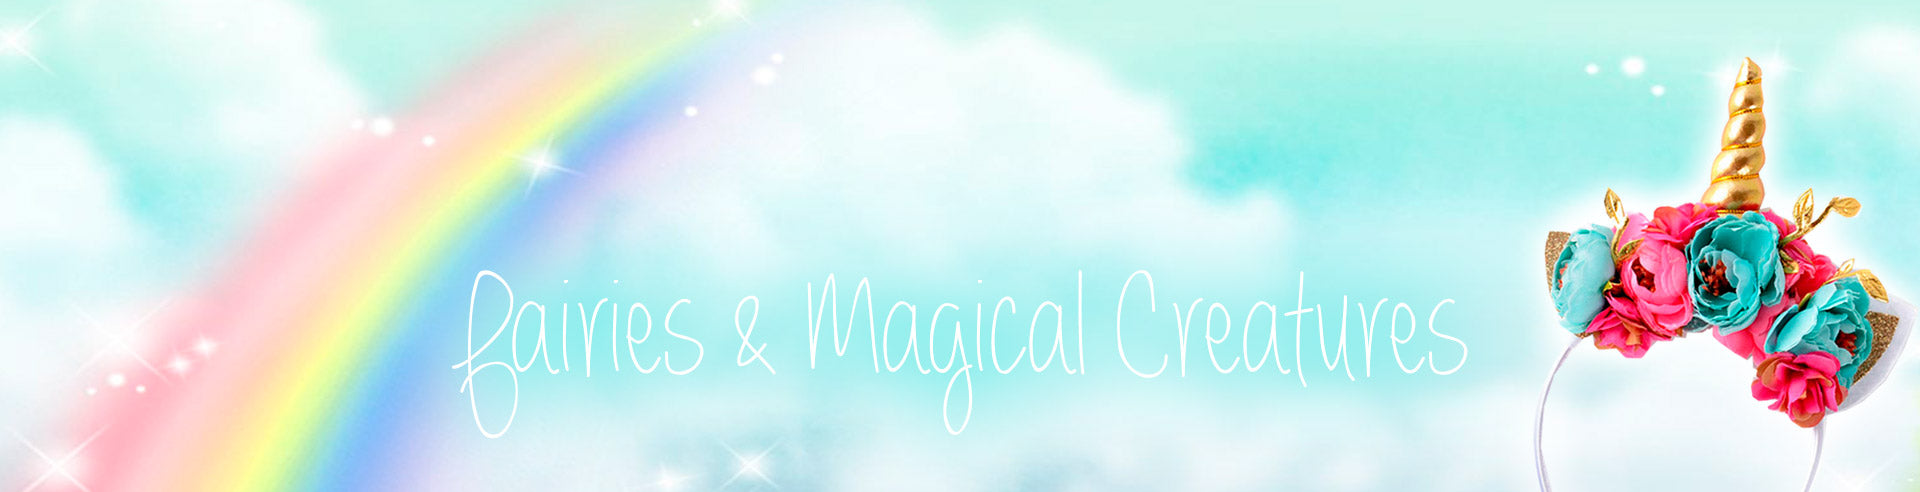 Fairies & Magical Creatures